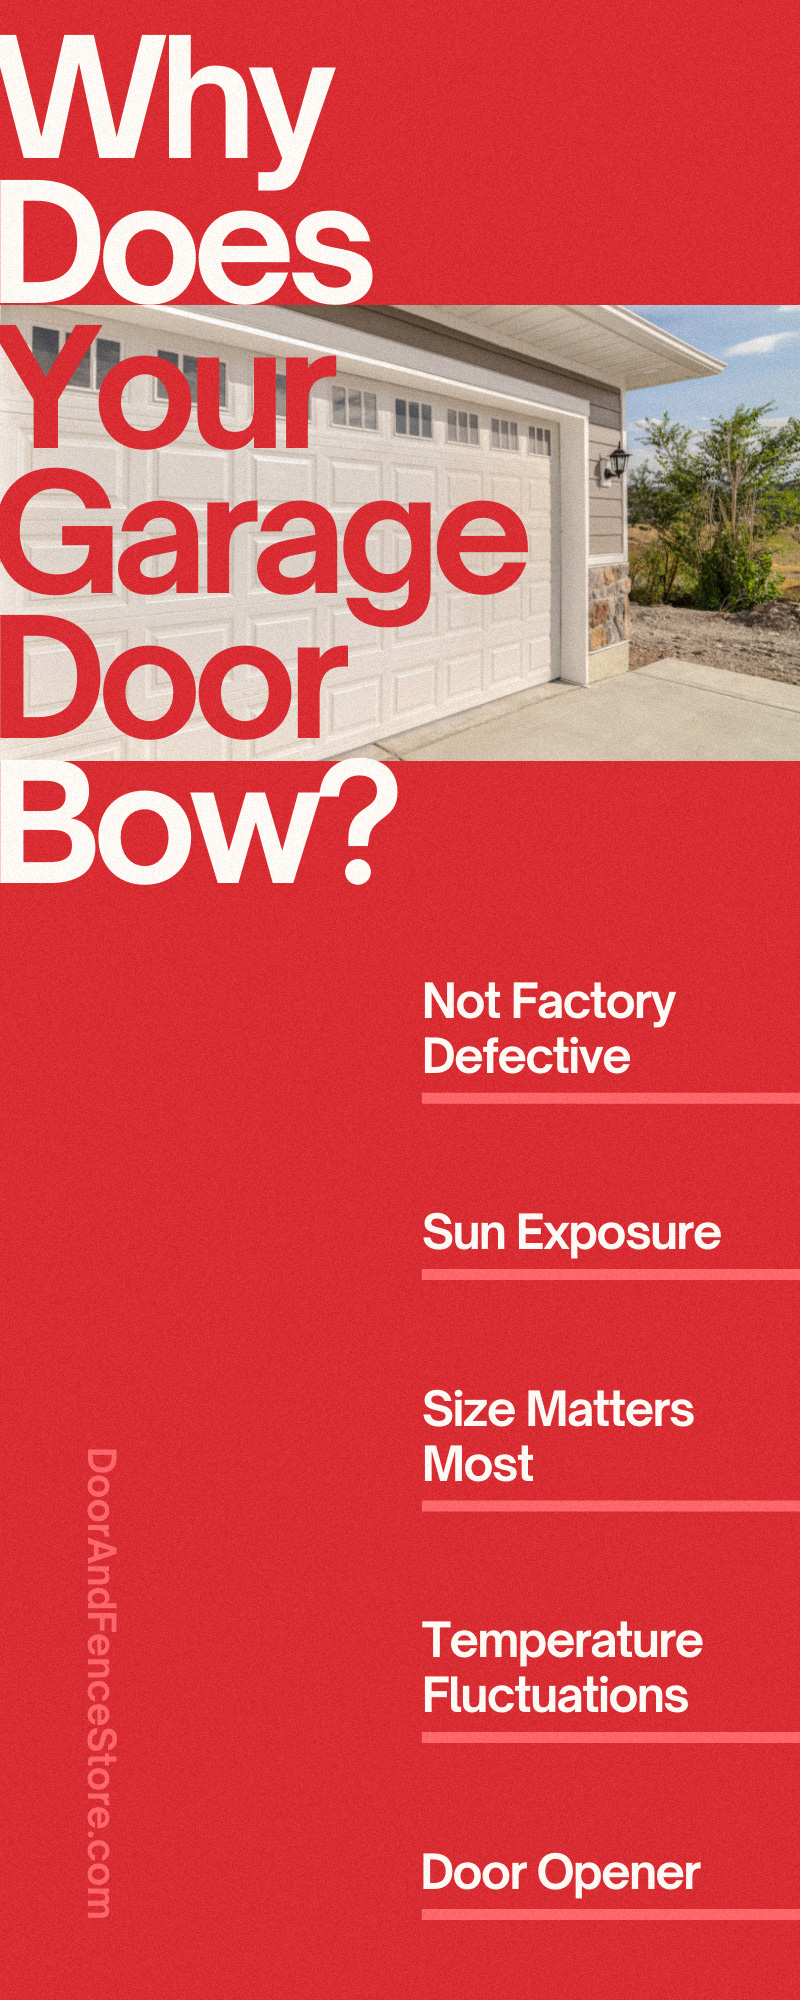 Garage Doors 101: Why Does Your Garage Door Bow?